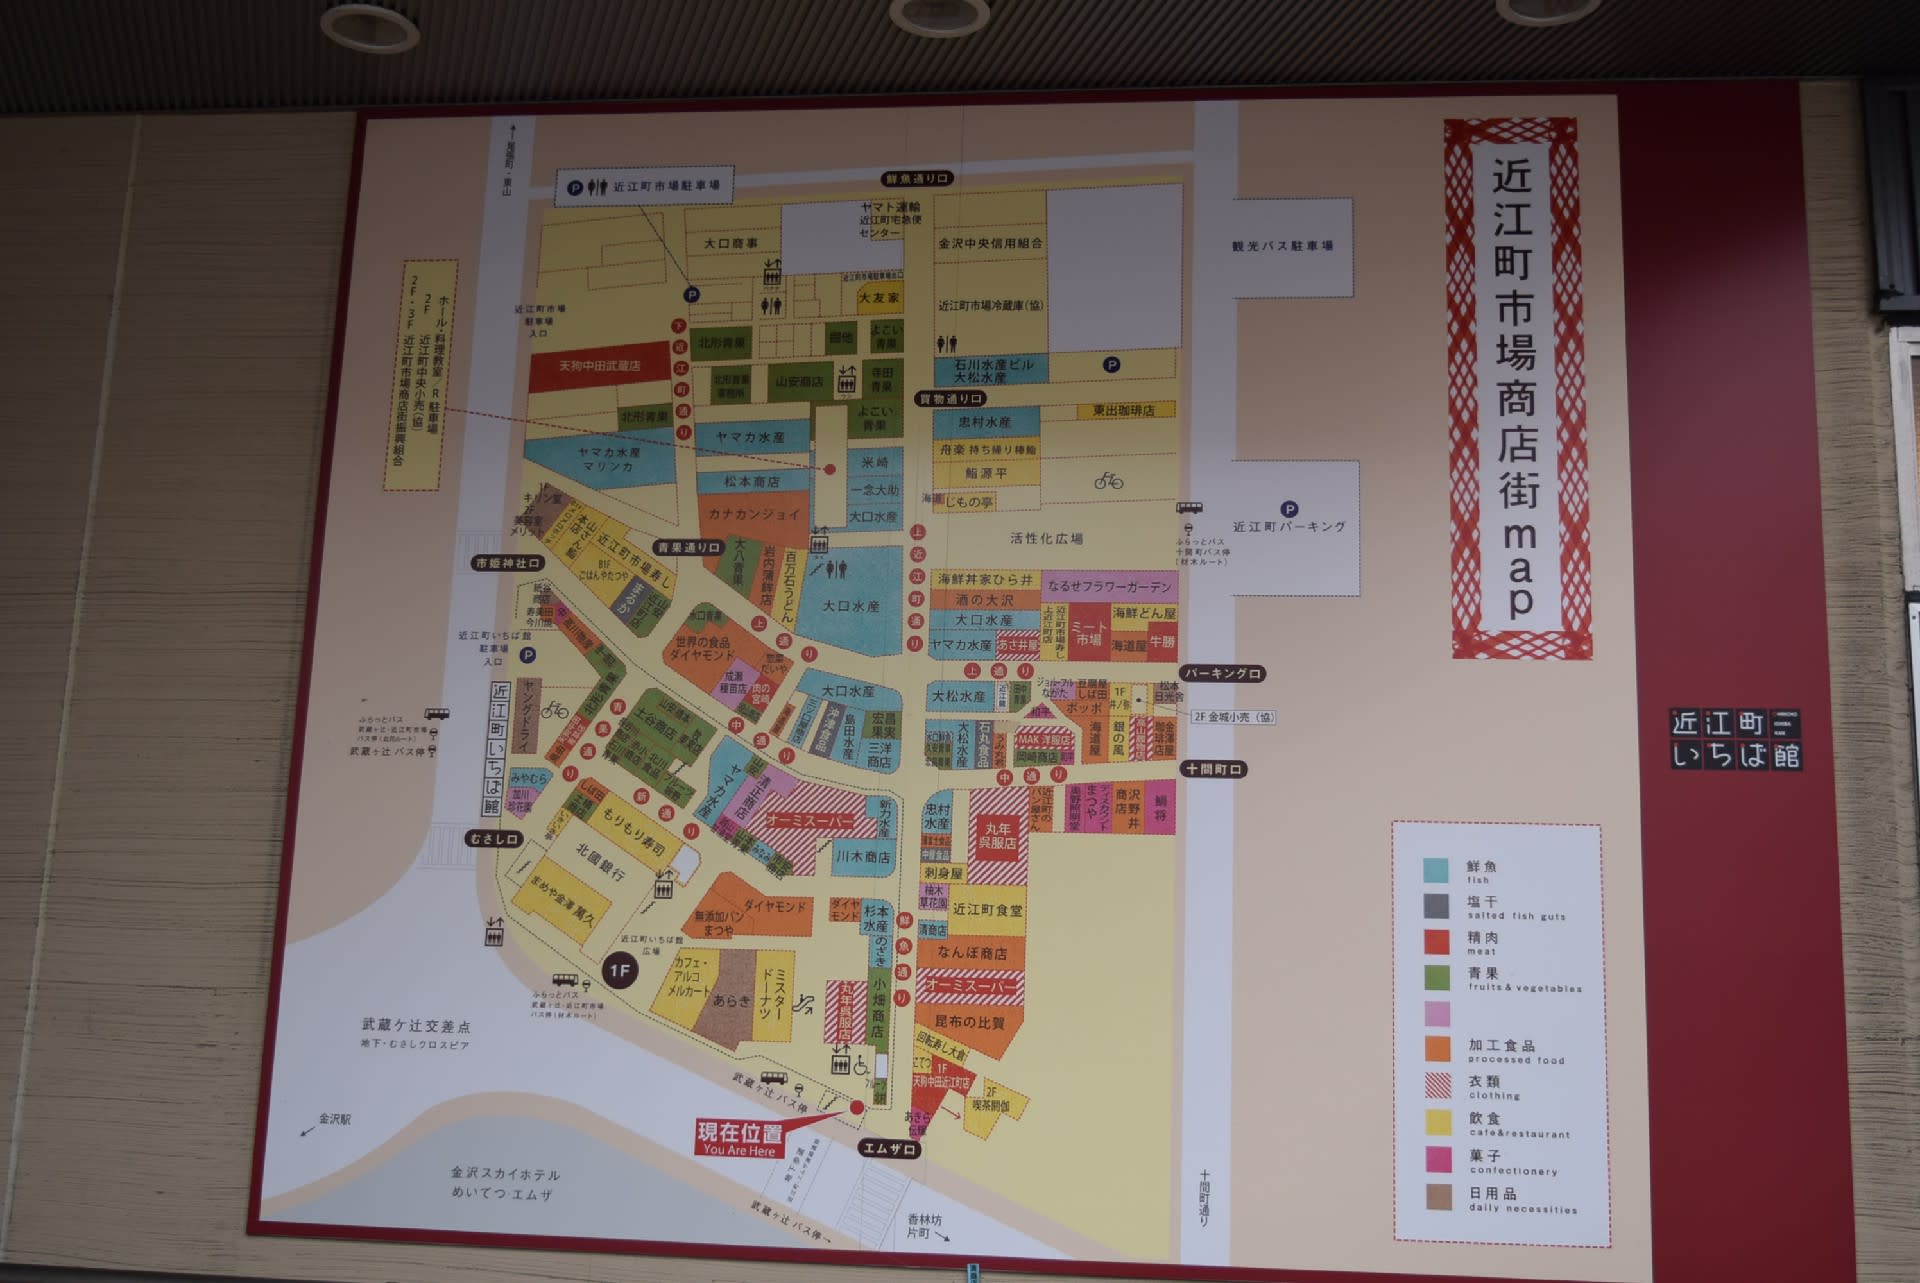 金沢の旅 金沢の胃袋 近江町市場で腹いっぱい オーロラ特急 ノスタルジック旅日記